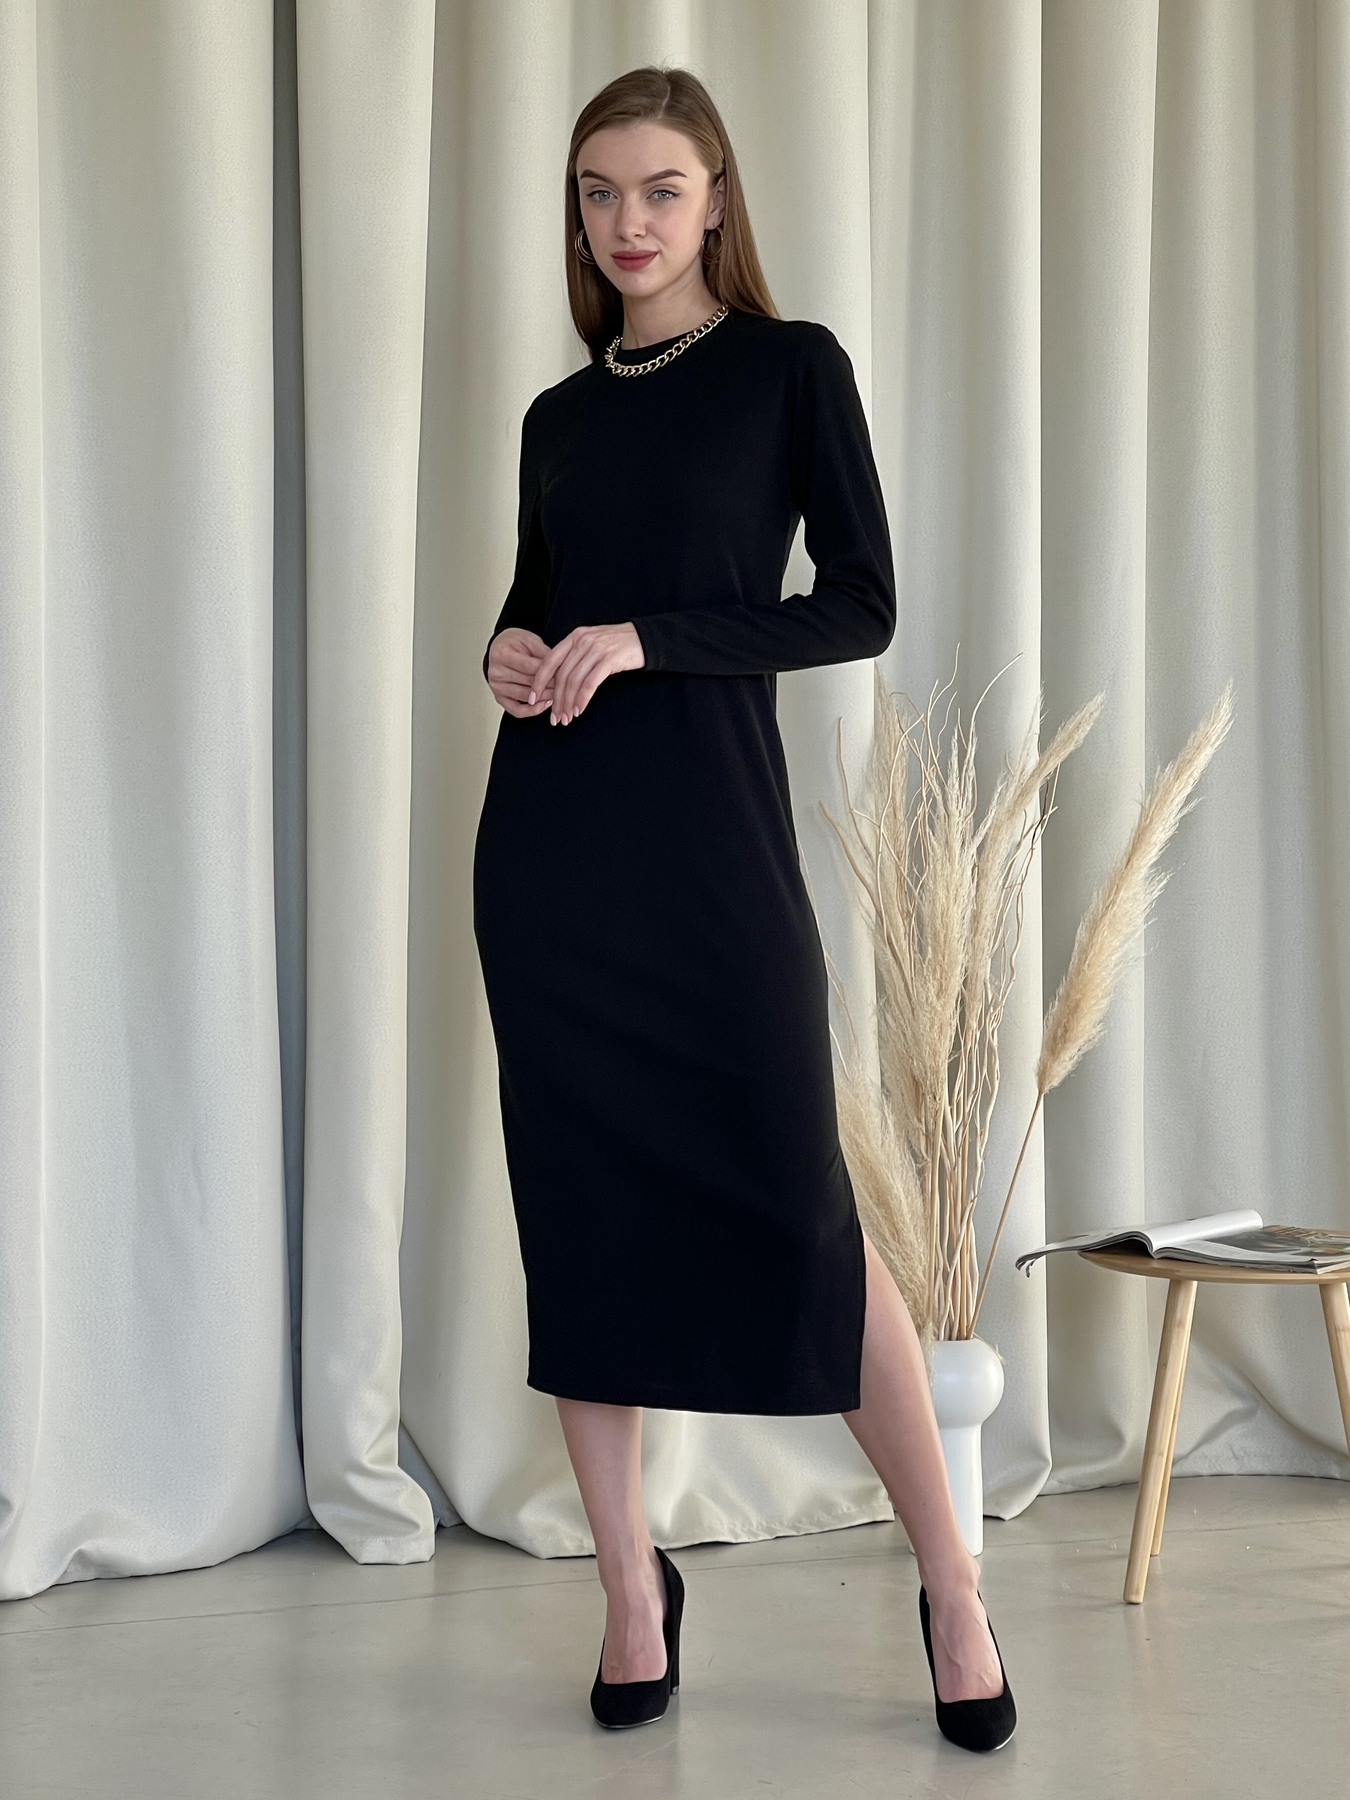 Купить Длинное платье черное в рубчик с длинным рукавом Merlini Кондо 700001161, размер 42-44 (S-M) в интернет-магазине